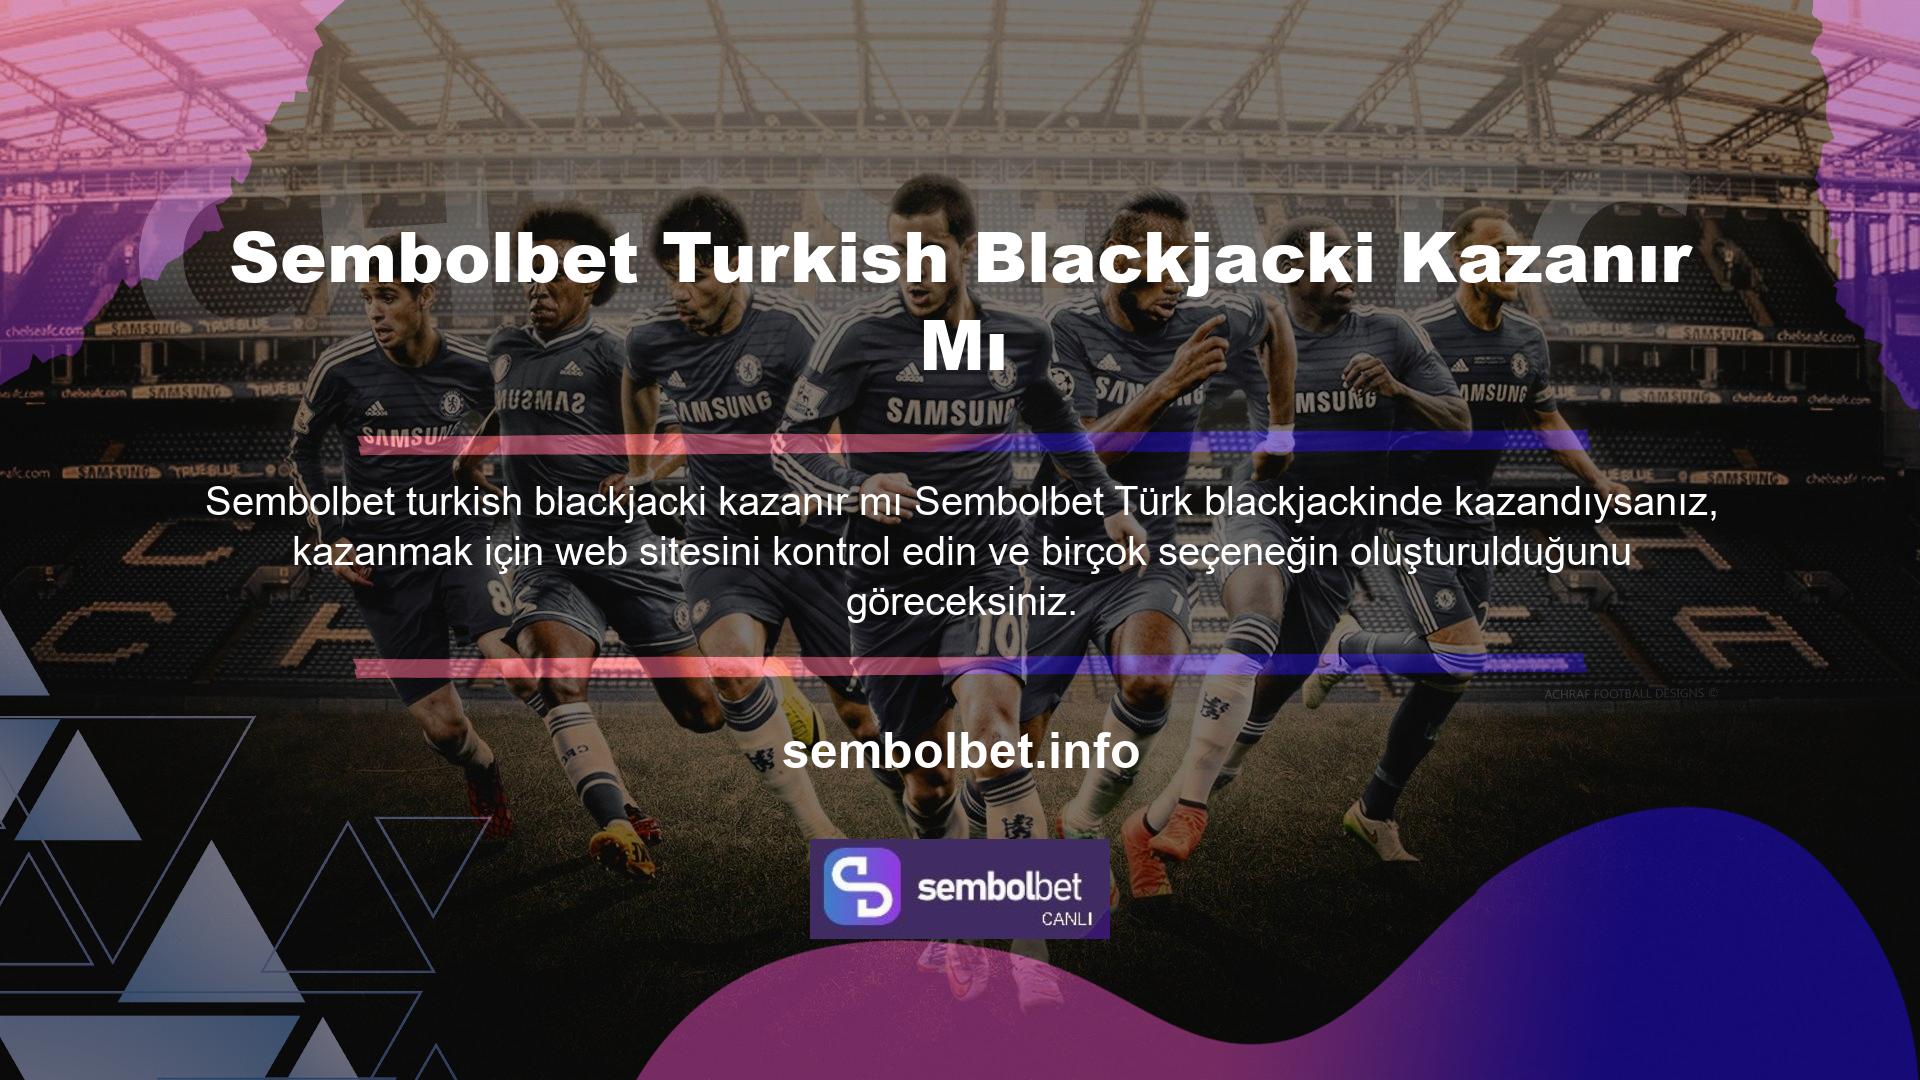 Sembolbet Turkish Blackjackte kazanabilir misiniz? Türk online casino hizmetlerinin sunduğu tüm oyunların kazanma olasılığı yüksektir